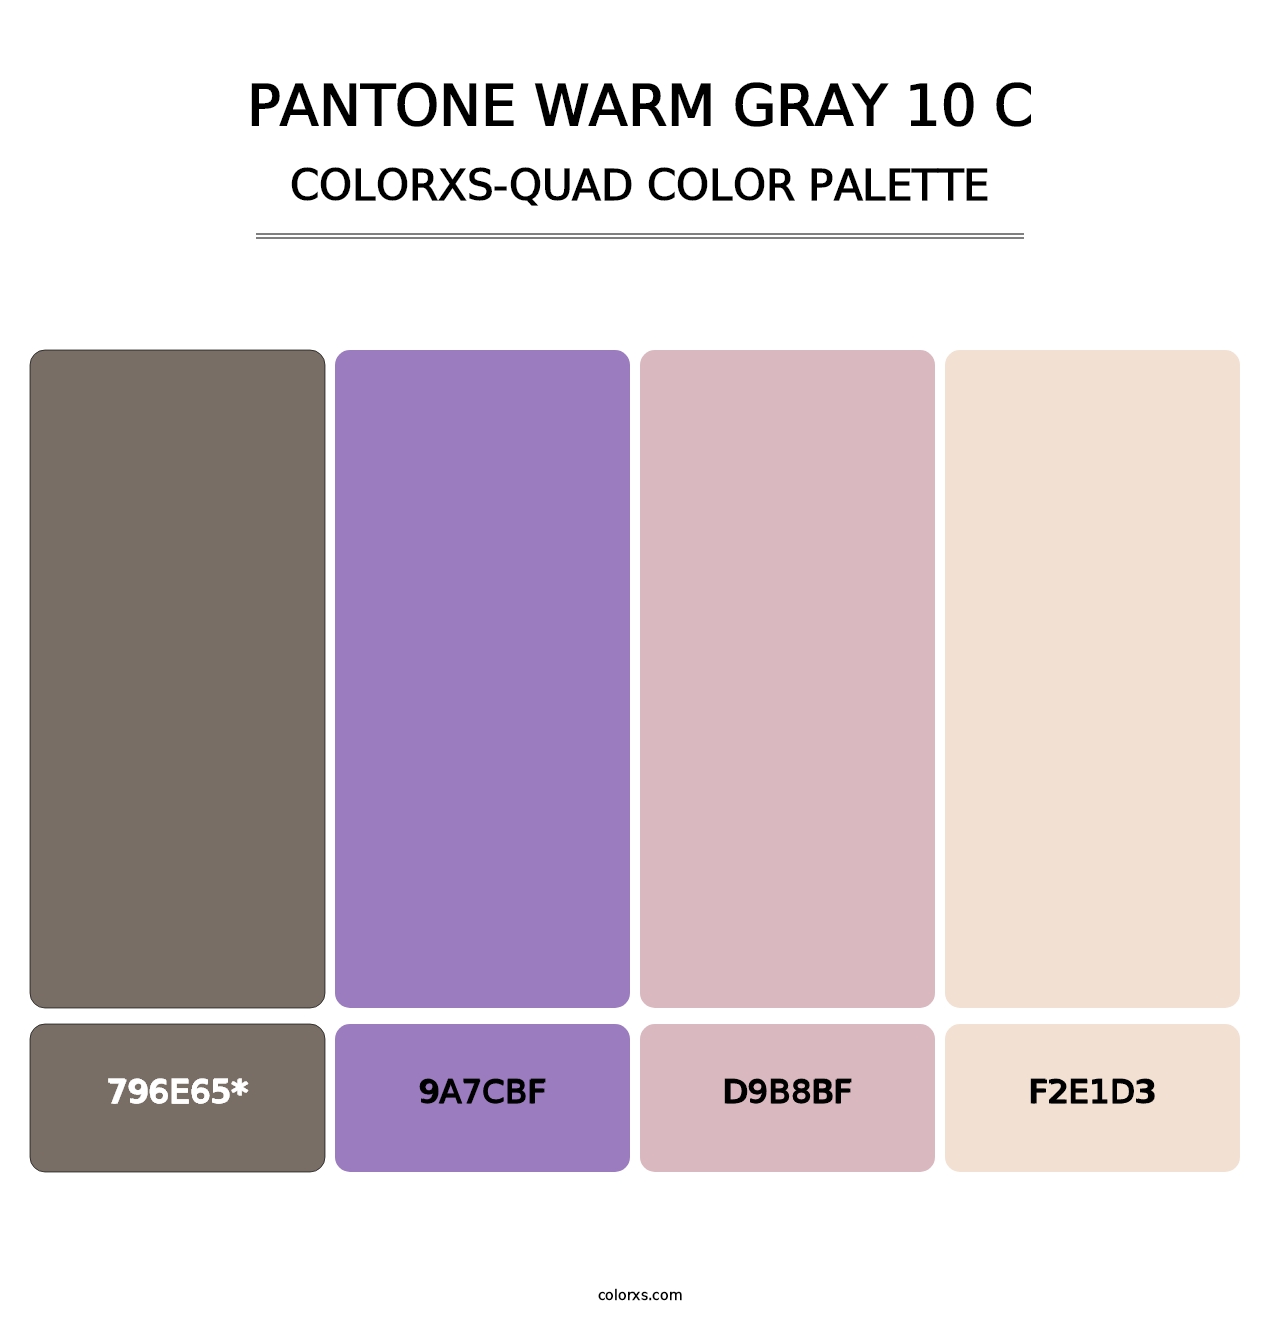 PANTONE Warm Gray 10 C - Colorxs Quad Palette